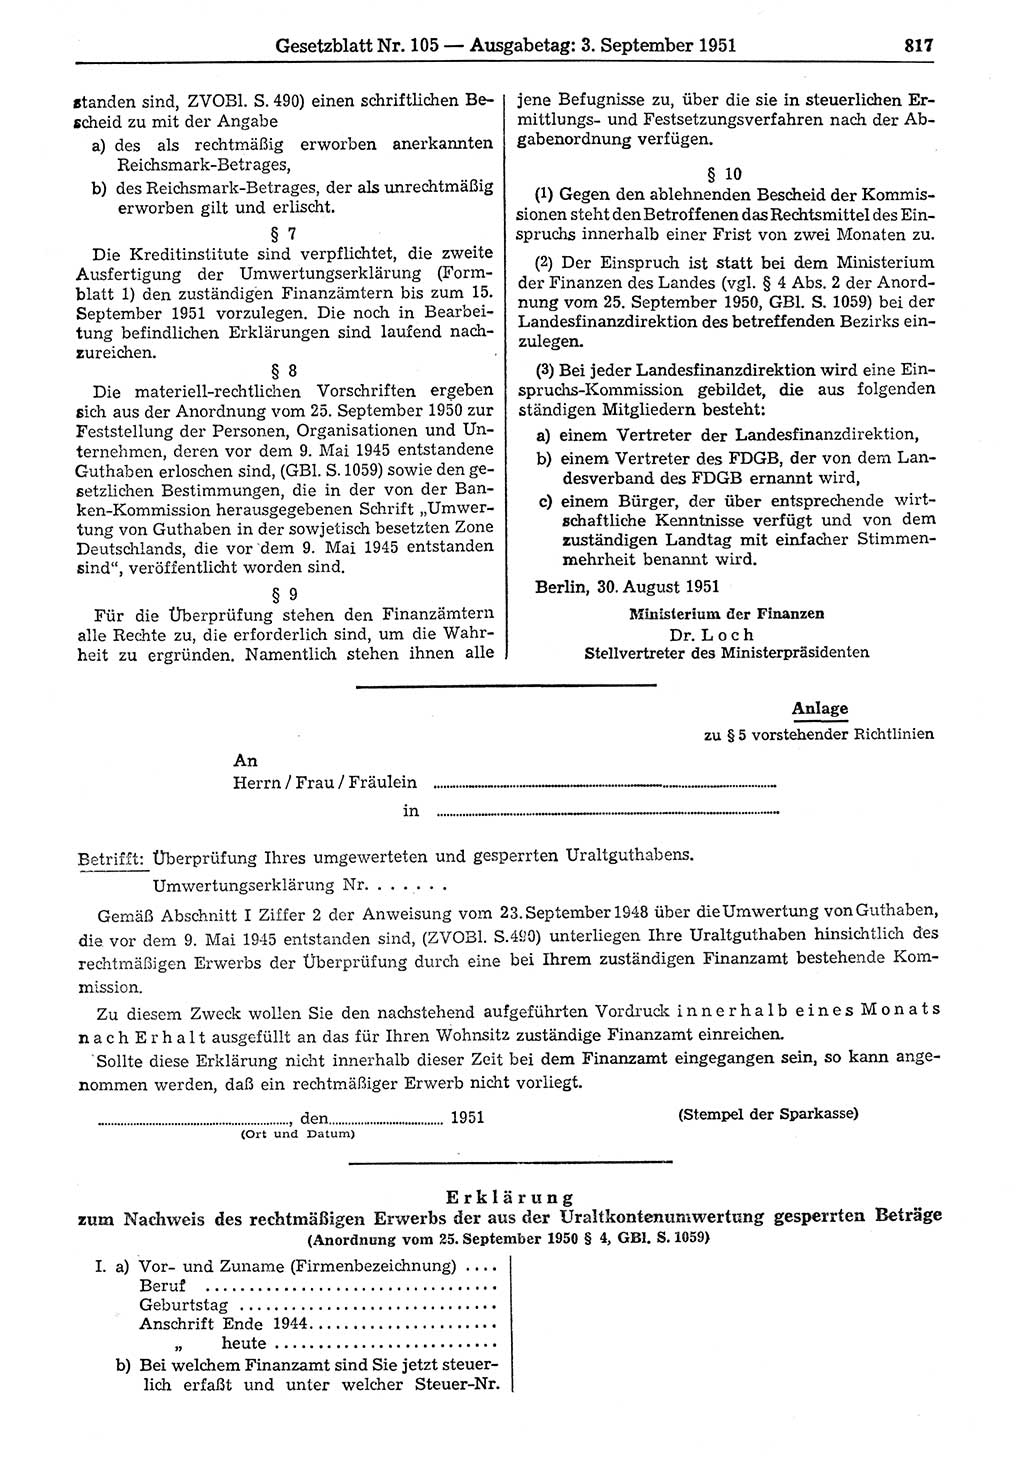 Gesetzblatt (GBl.) der Deutschen Demokratischen Republik (DDR) 1951, Seite 817 (GBl. DDR 1951, S. 817)